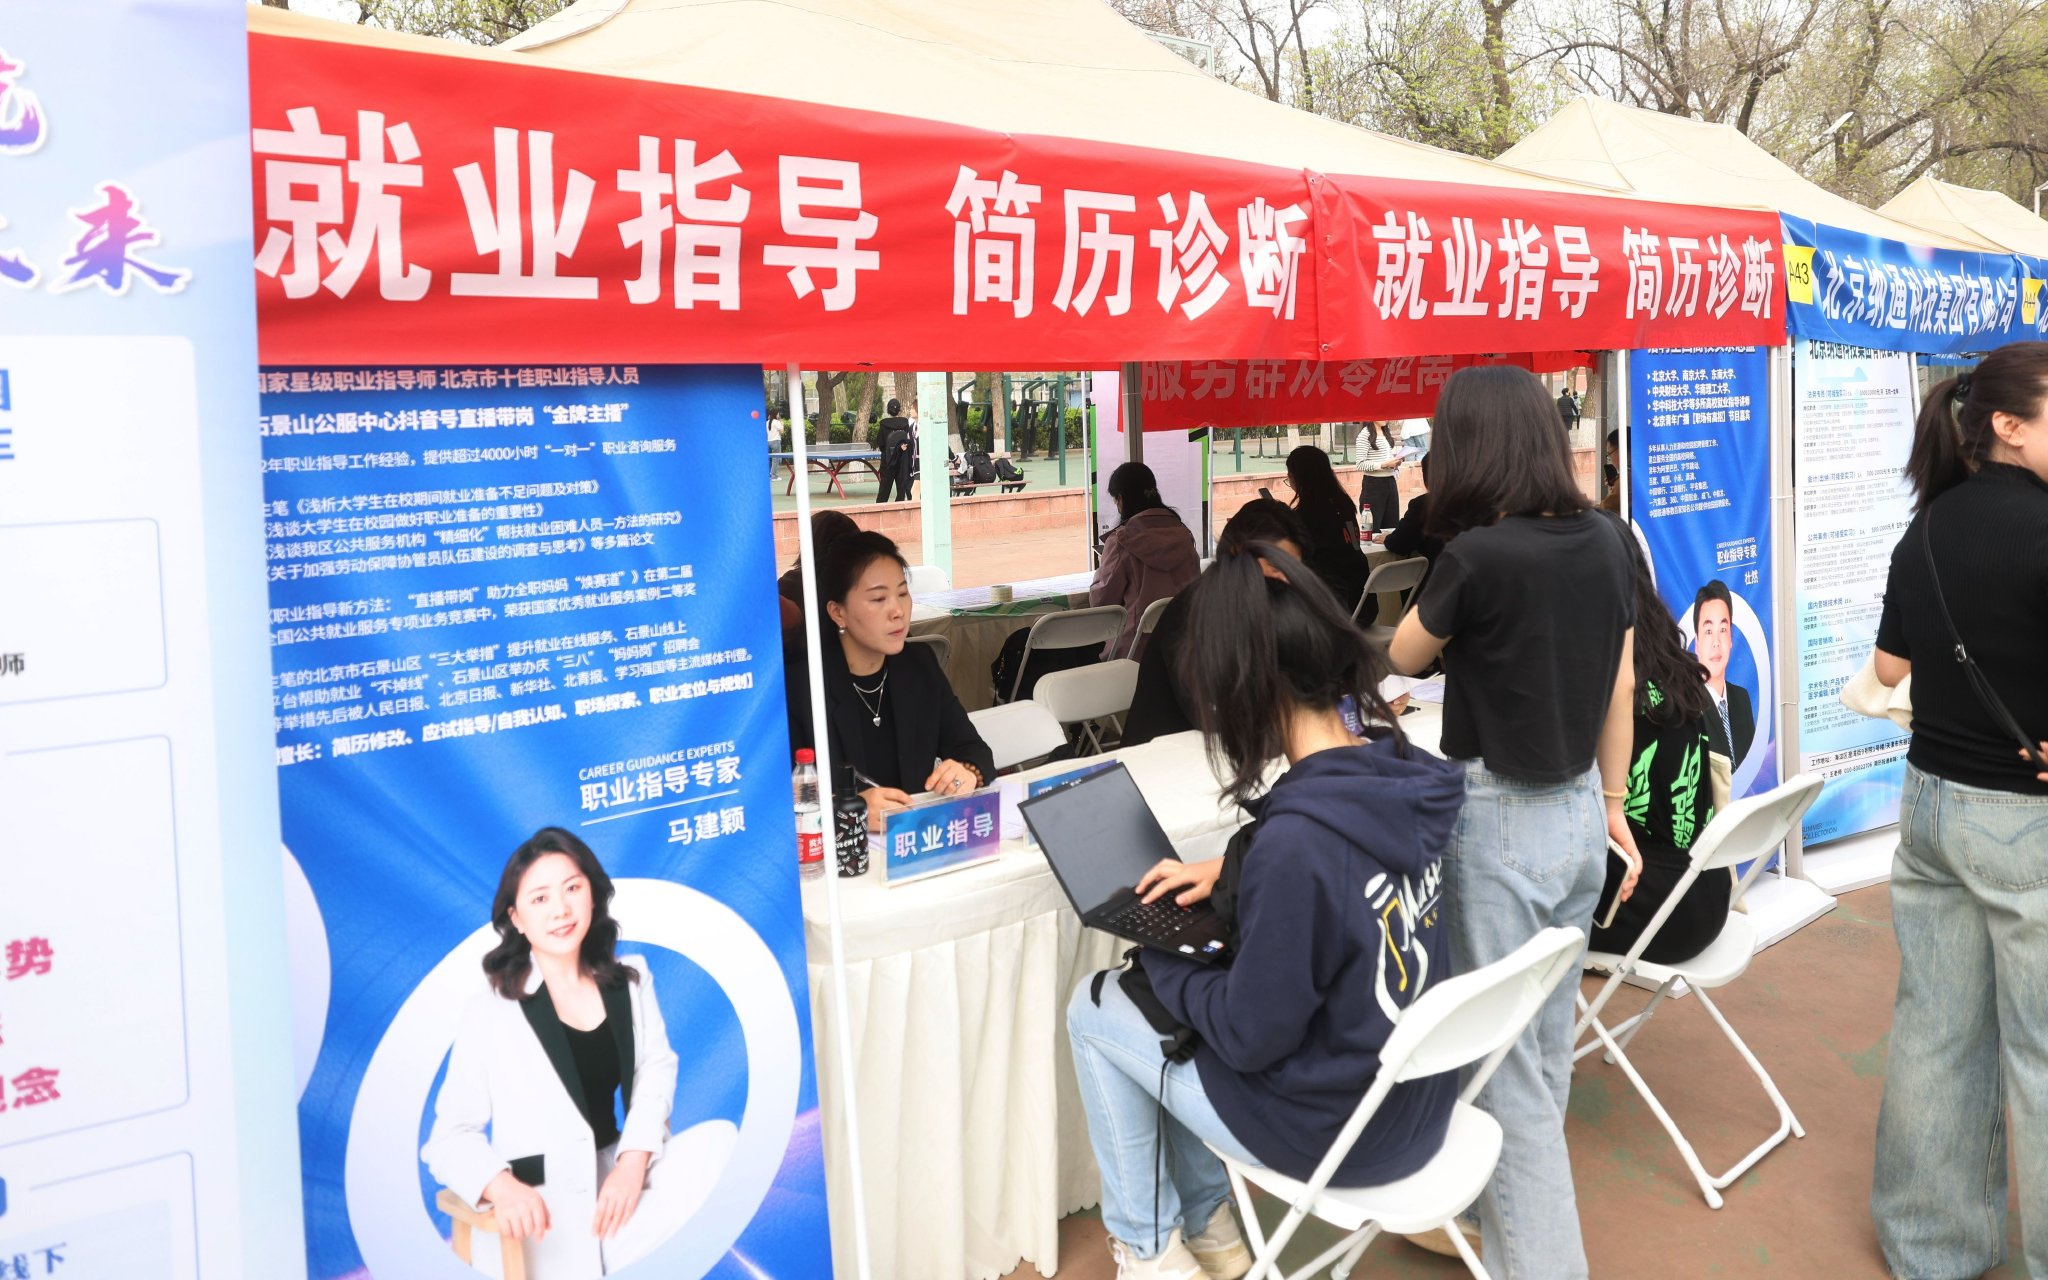 雙選會吸引了眾多畢業生前來諮詢。新京報記者 王貴彬 攝